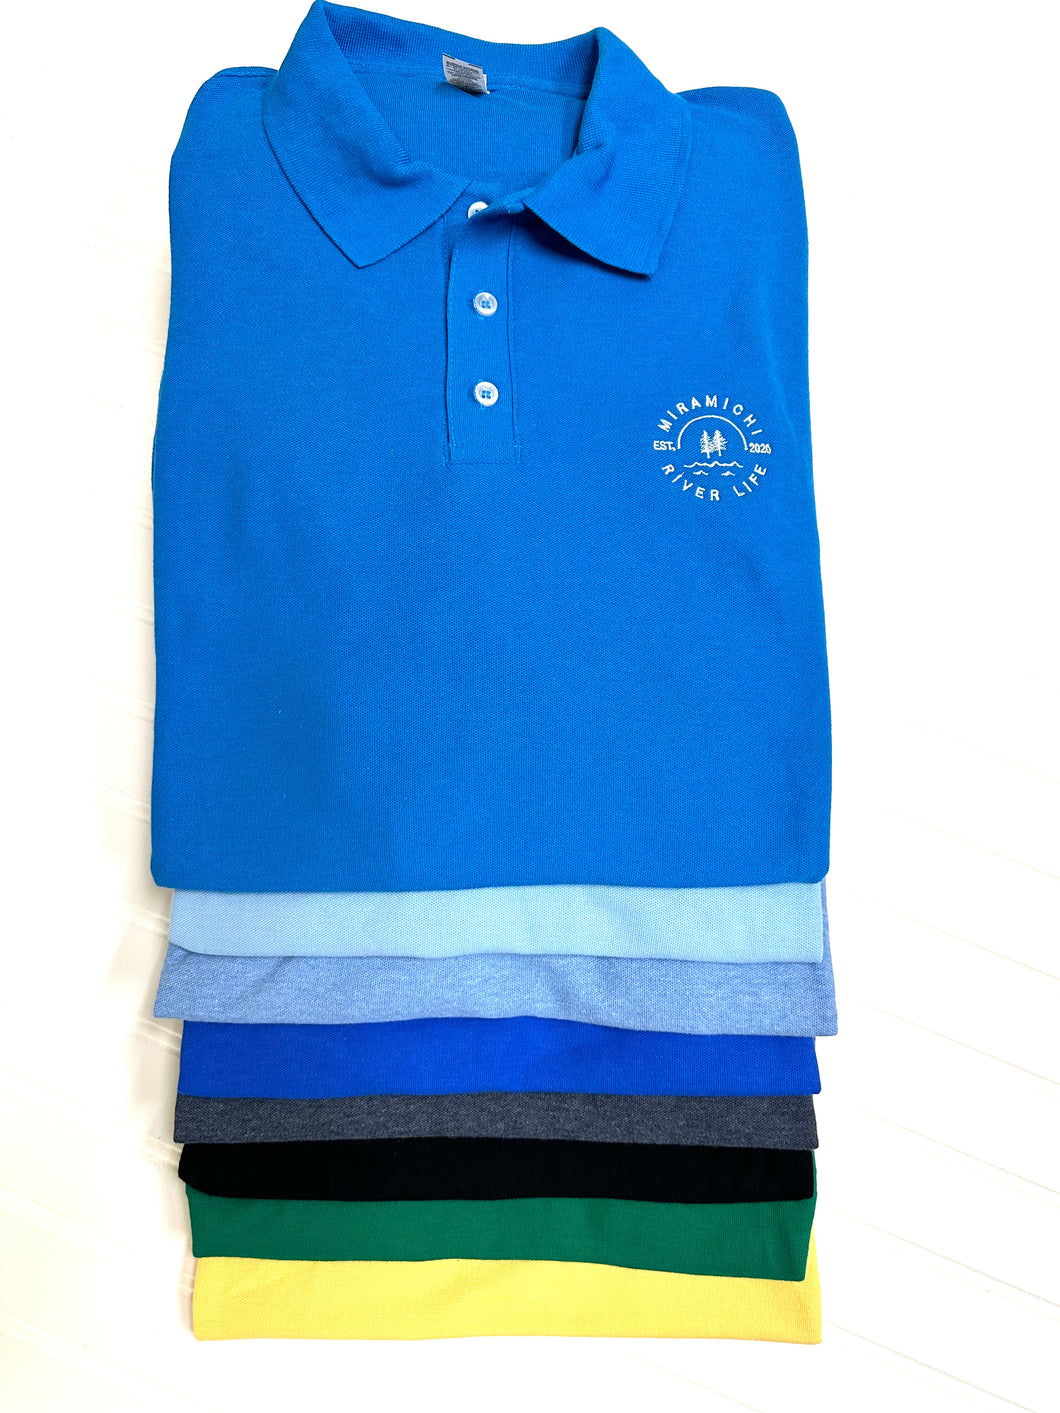 MRL Unisex Golf Shirt - CARIBBEAN BLUE